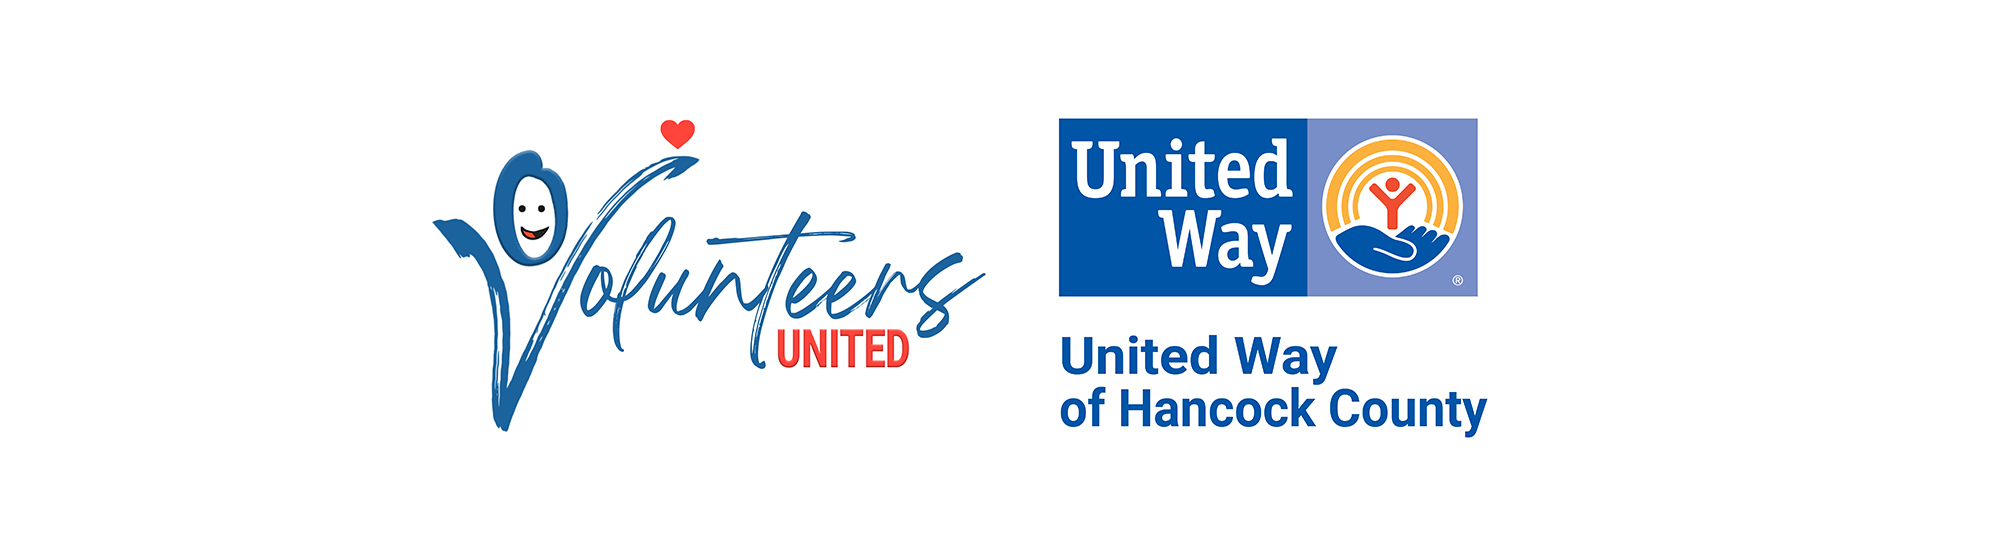 Volunteers United & United Way of Hancock County